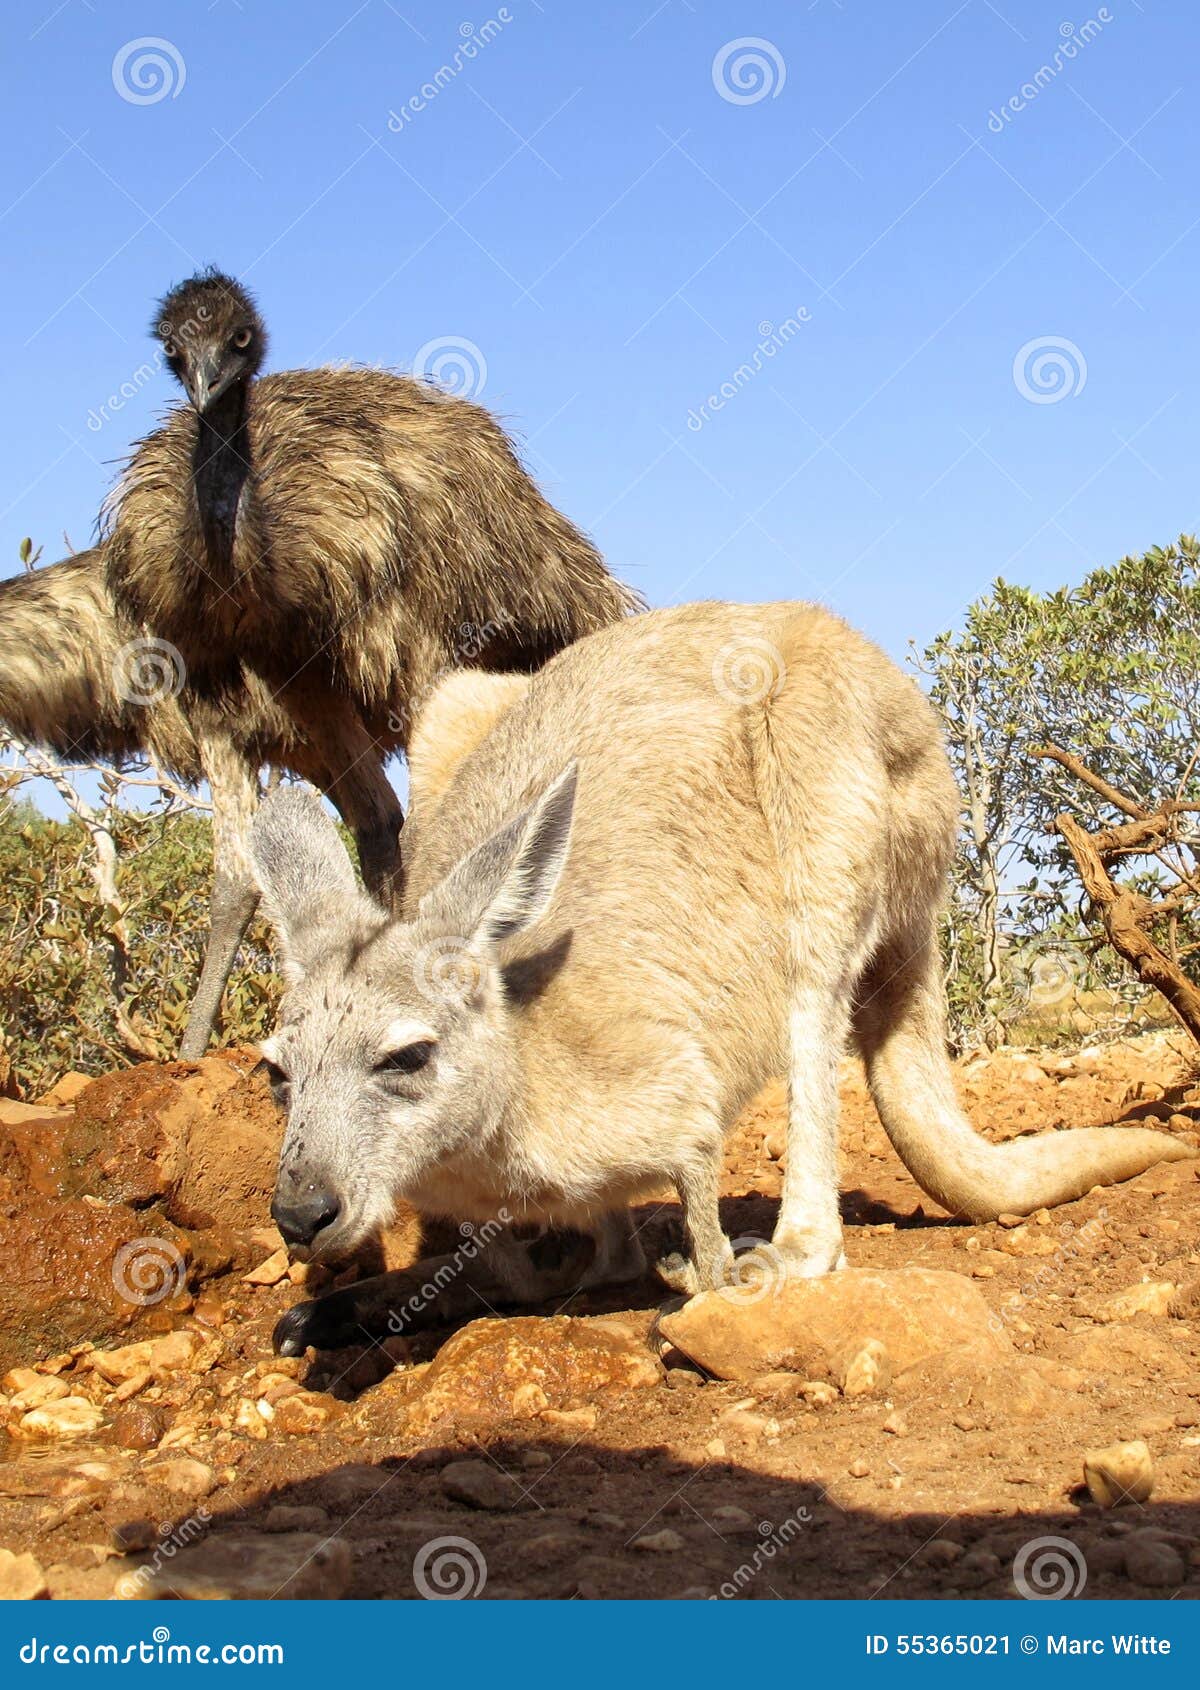 Kangaroo, australia stock image. Image of cleland, large - 55365021